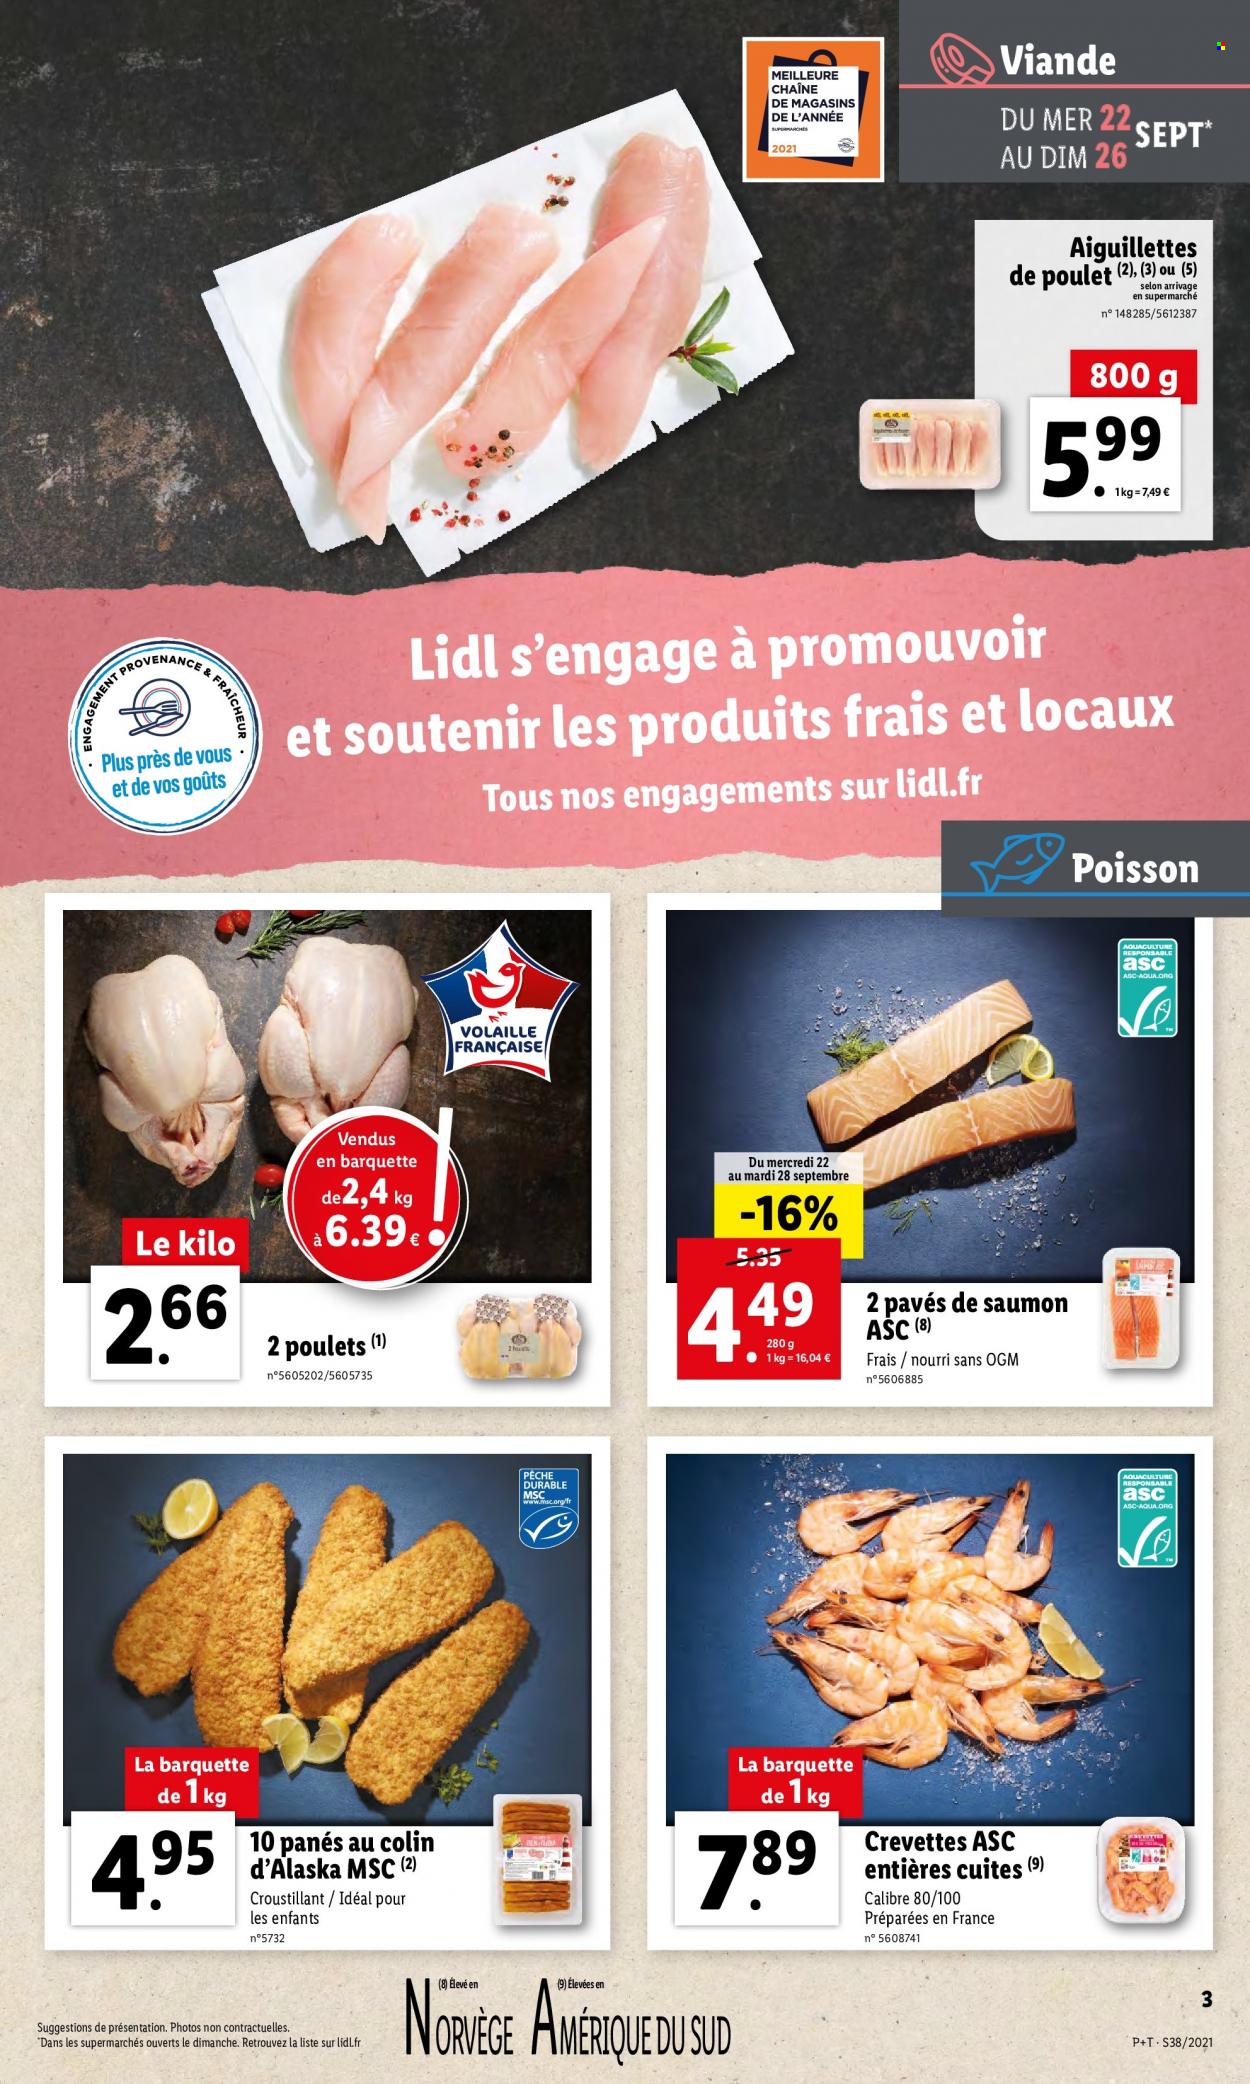 thumbnail - Catalogue Lidl - 22/09/2021 - 28/09/2021 - Produits soldés - viande de poulet, escalope de poulet, saumon, pavés de saumon, panés de poissons. Page 3.